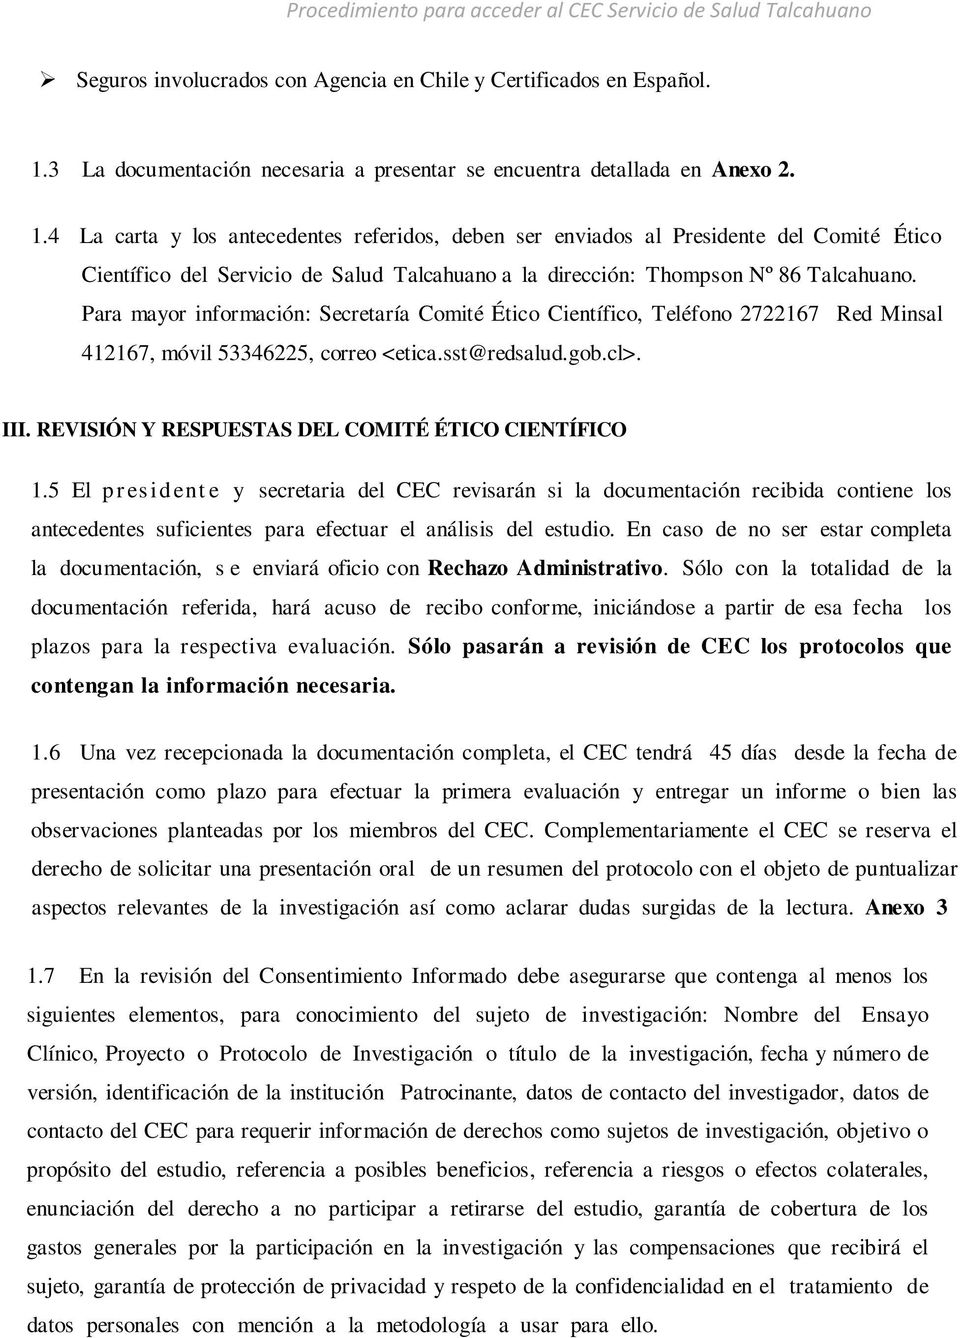 4 La carta y los antecedentes referidos, deben ser enviados al Presidente del Comité Ético Científico del Servicio de Salud Talcahuano a la dirección: Thompson Nº 86 Talcahuano.